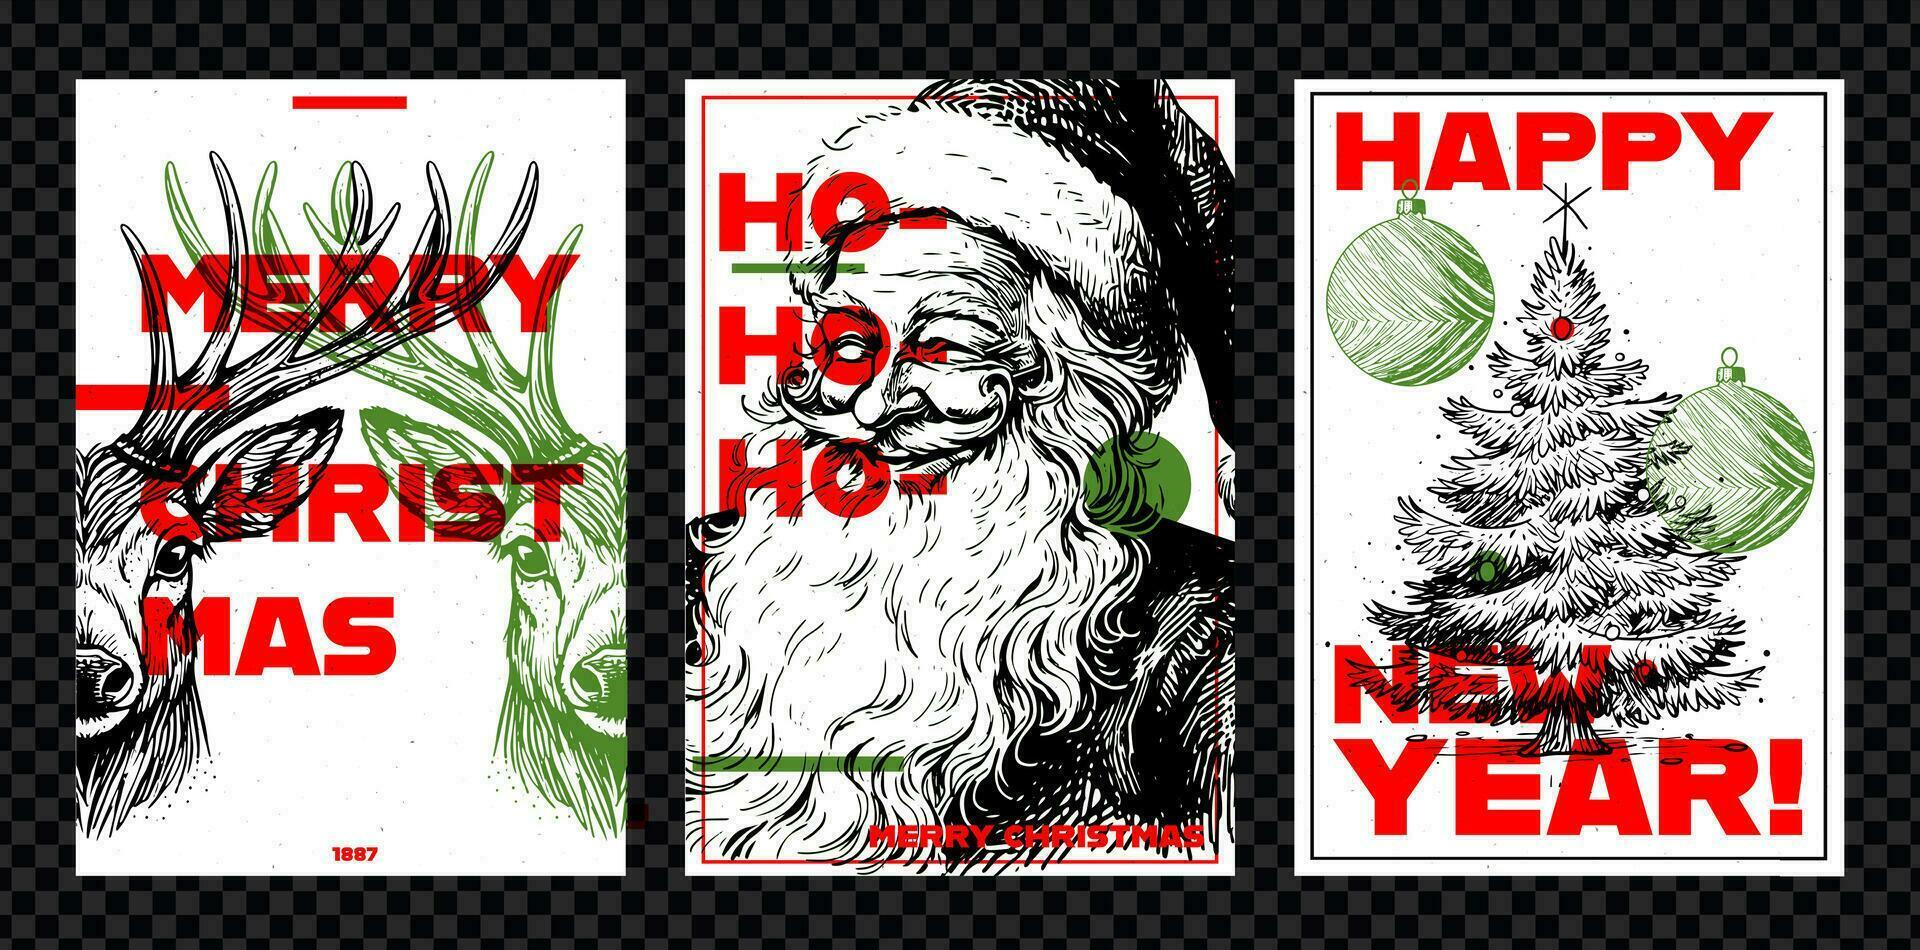 uppsättning av glad jul flygblad, affisch eller vykort med ren, santa claus och en jul träd. årgång vektor kort med hand dragen i graverat stil.